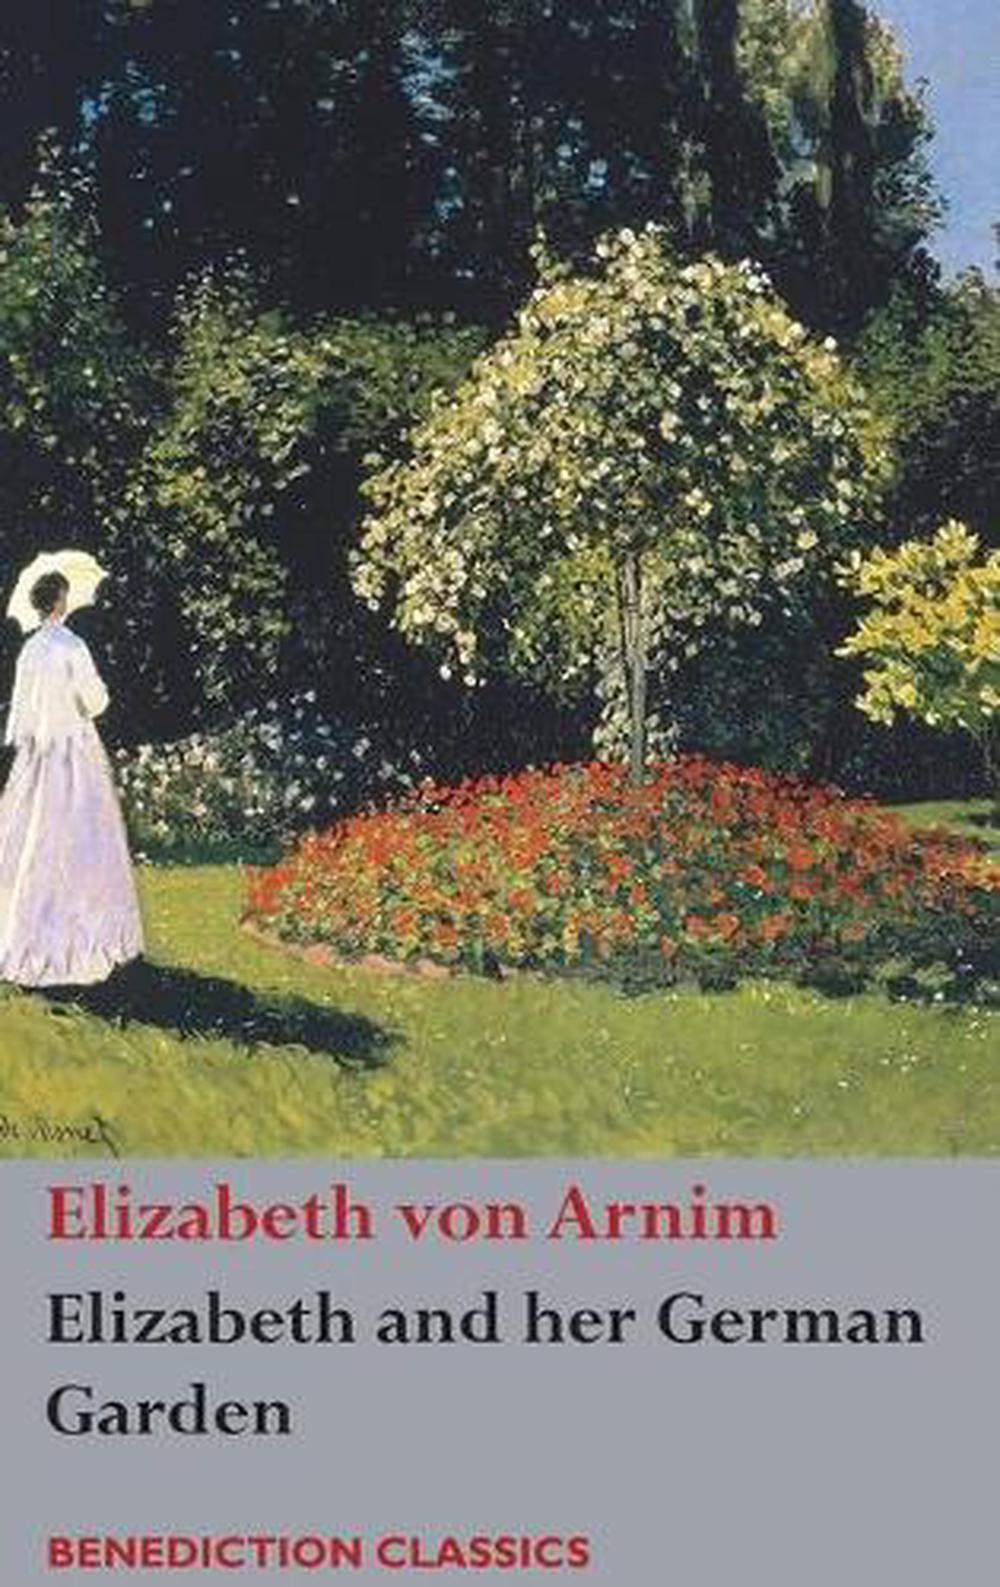 Elizabeth And Her German Garden by Elizabeth von Arnim